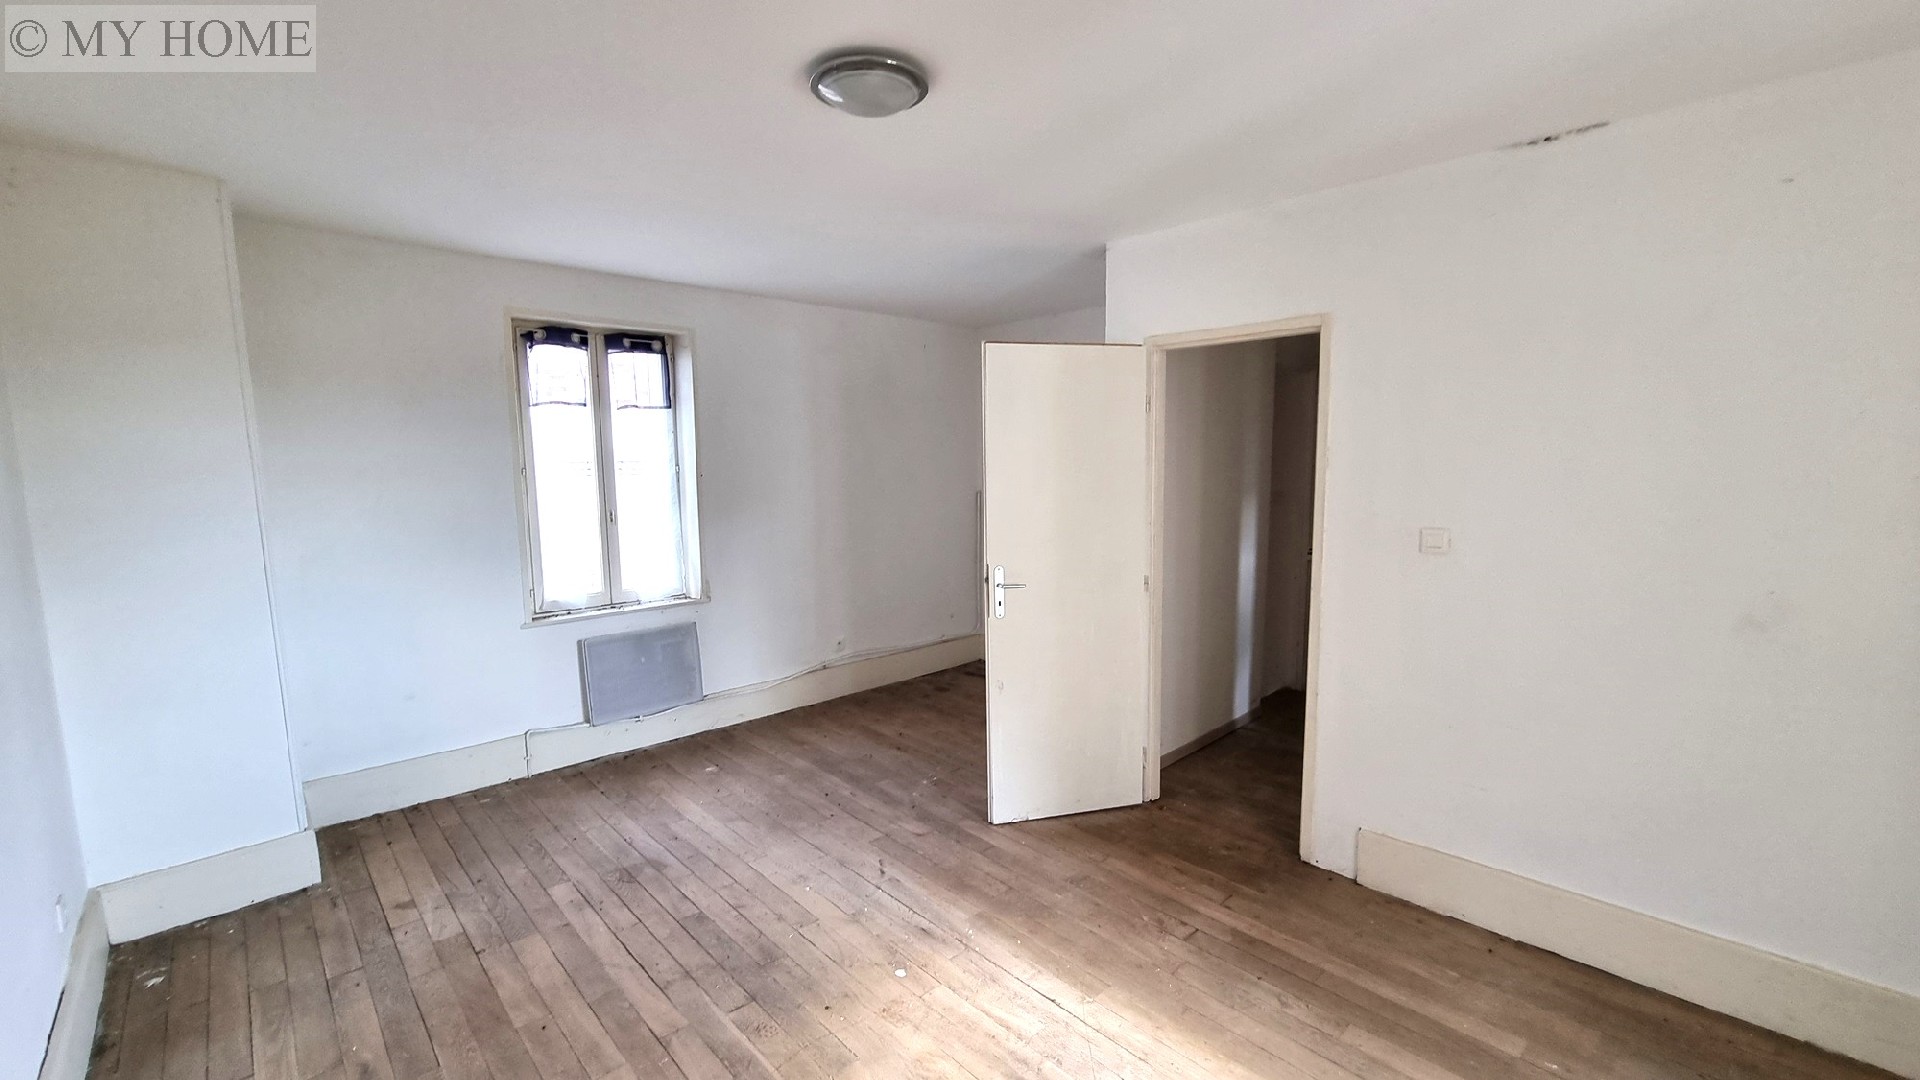 Vente appartement - TOUL 114 m², 3 pièces